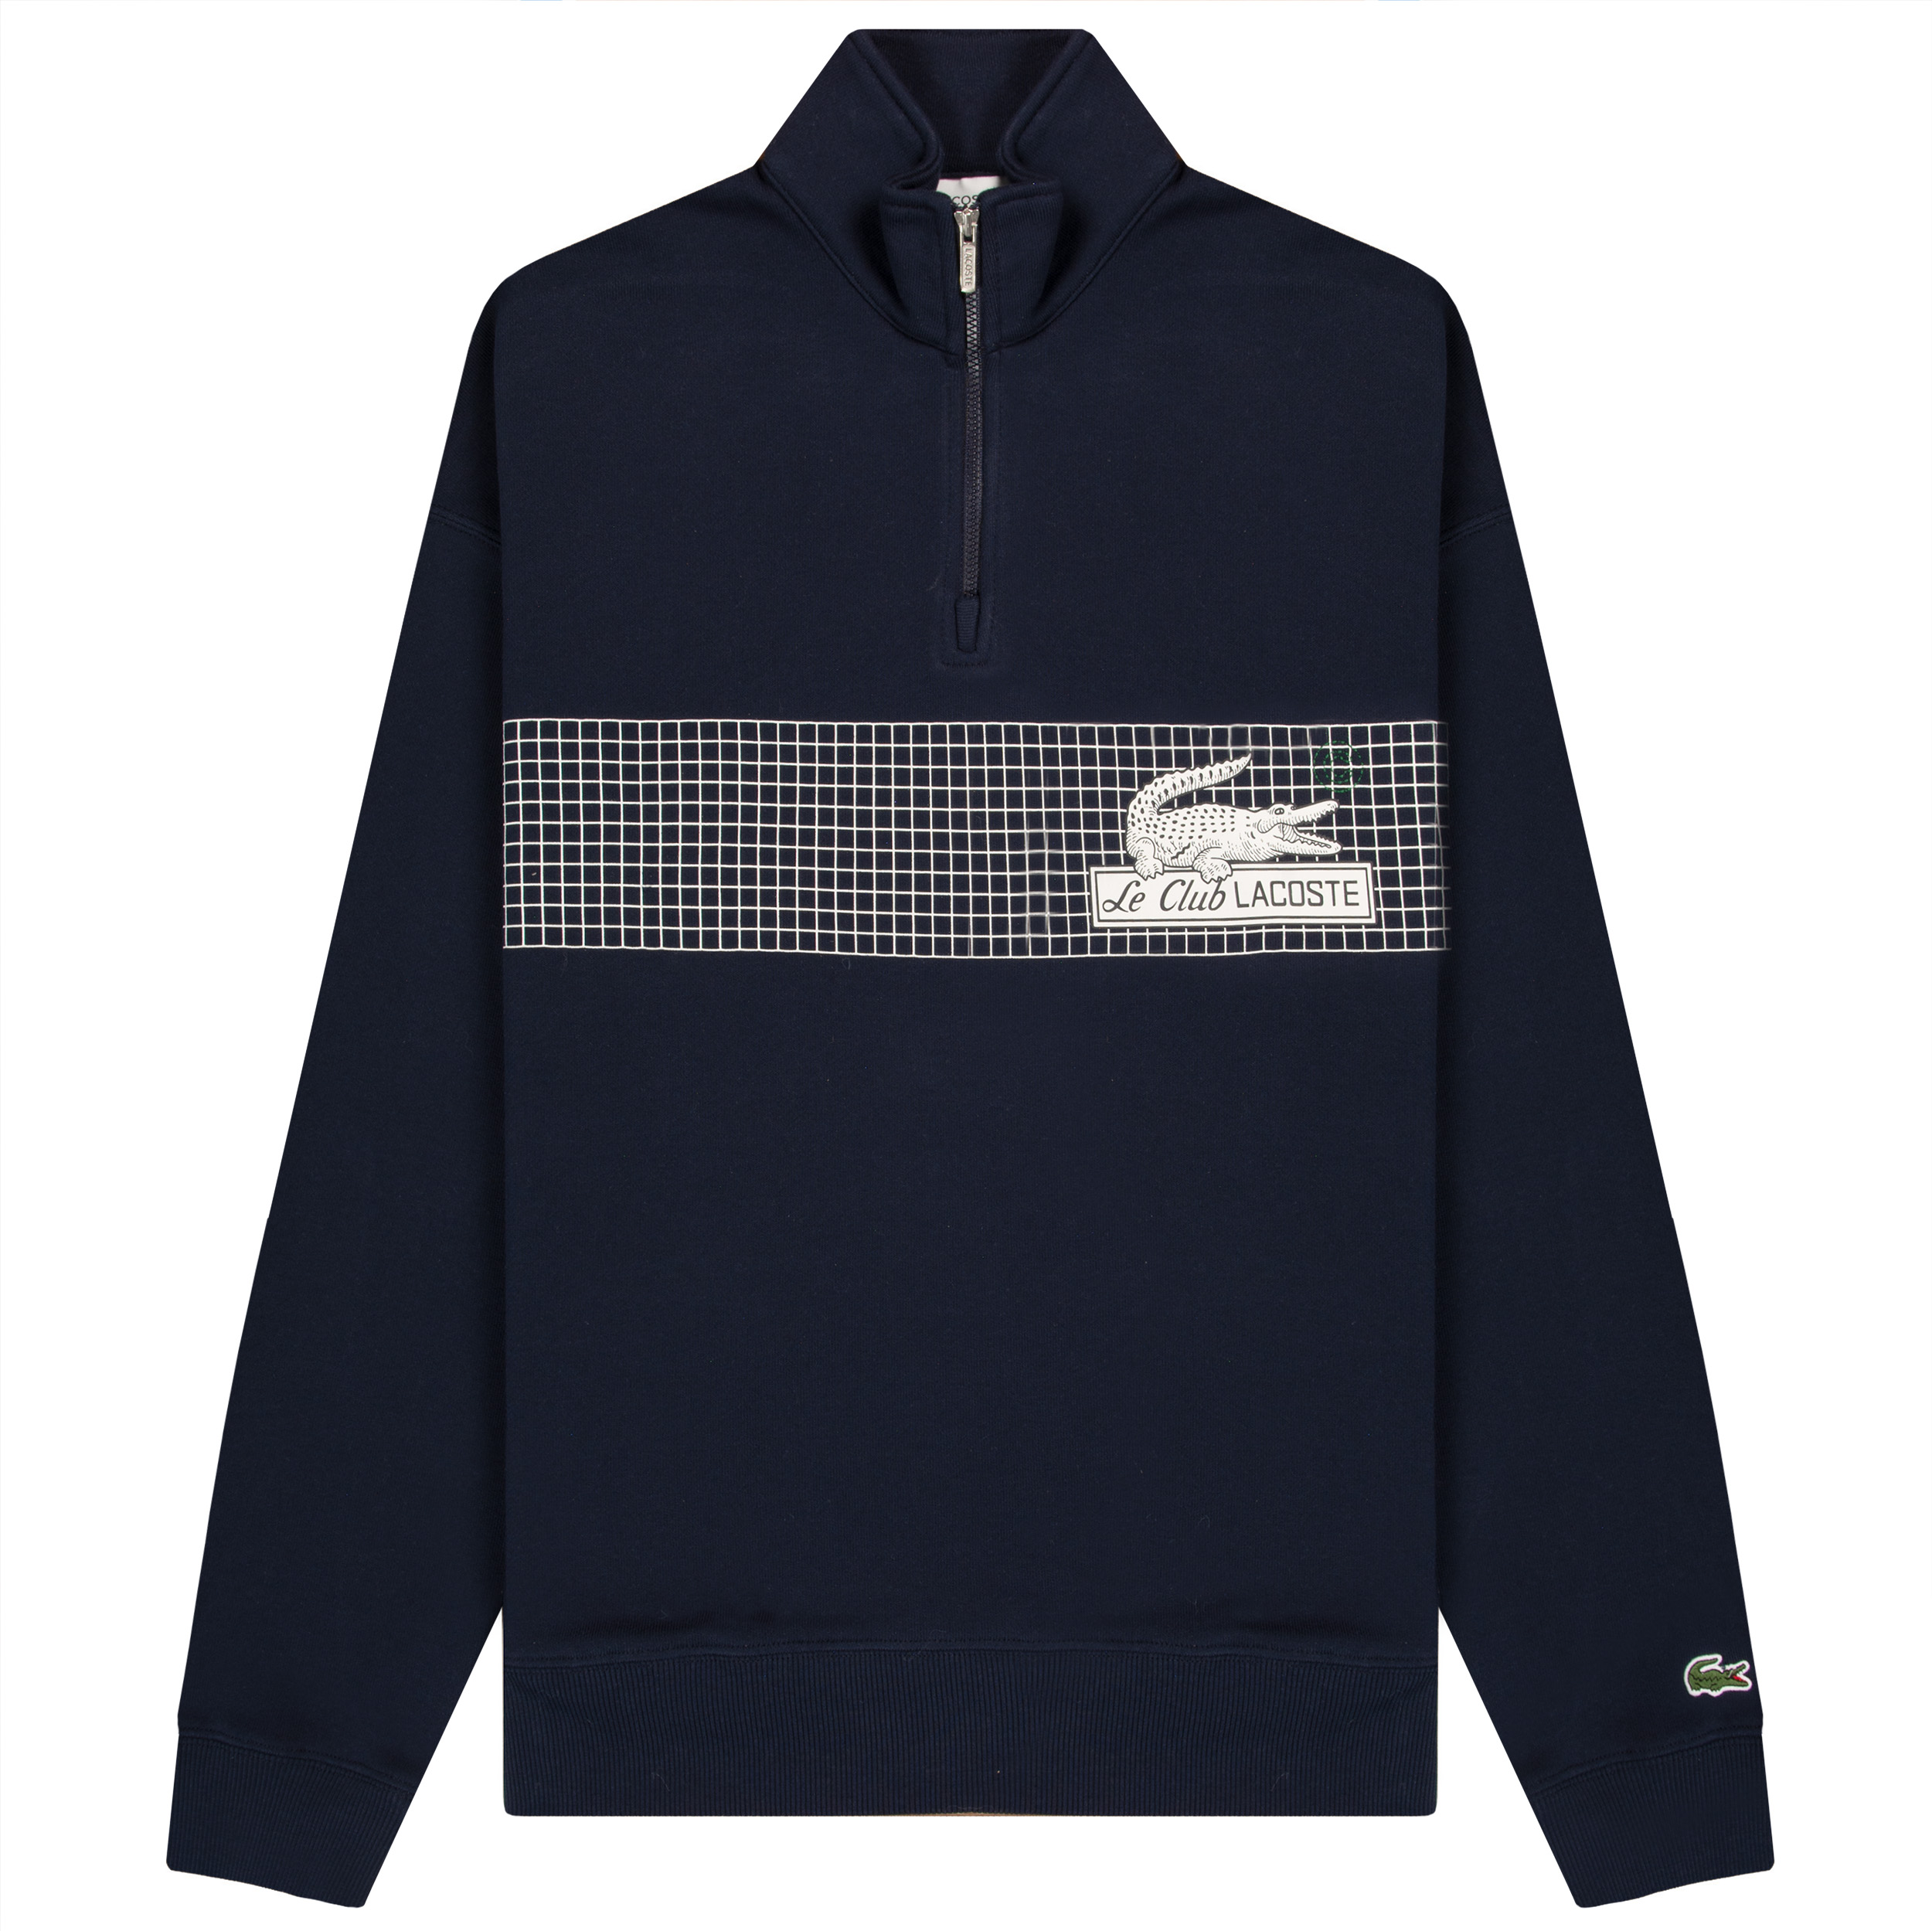 1/4 Zip Club Lacoste Print Sweatshirt Navy